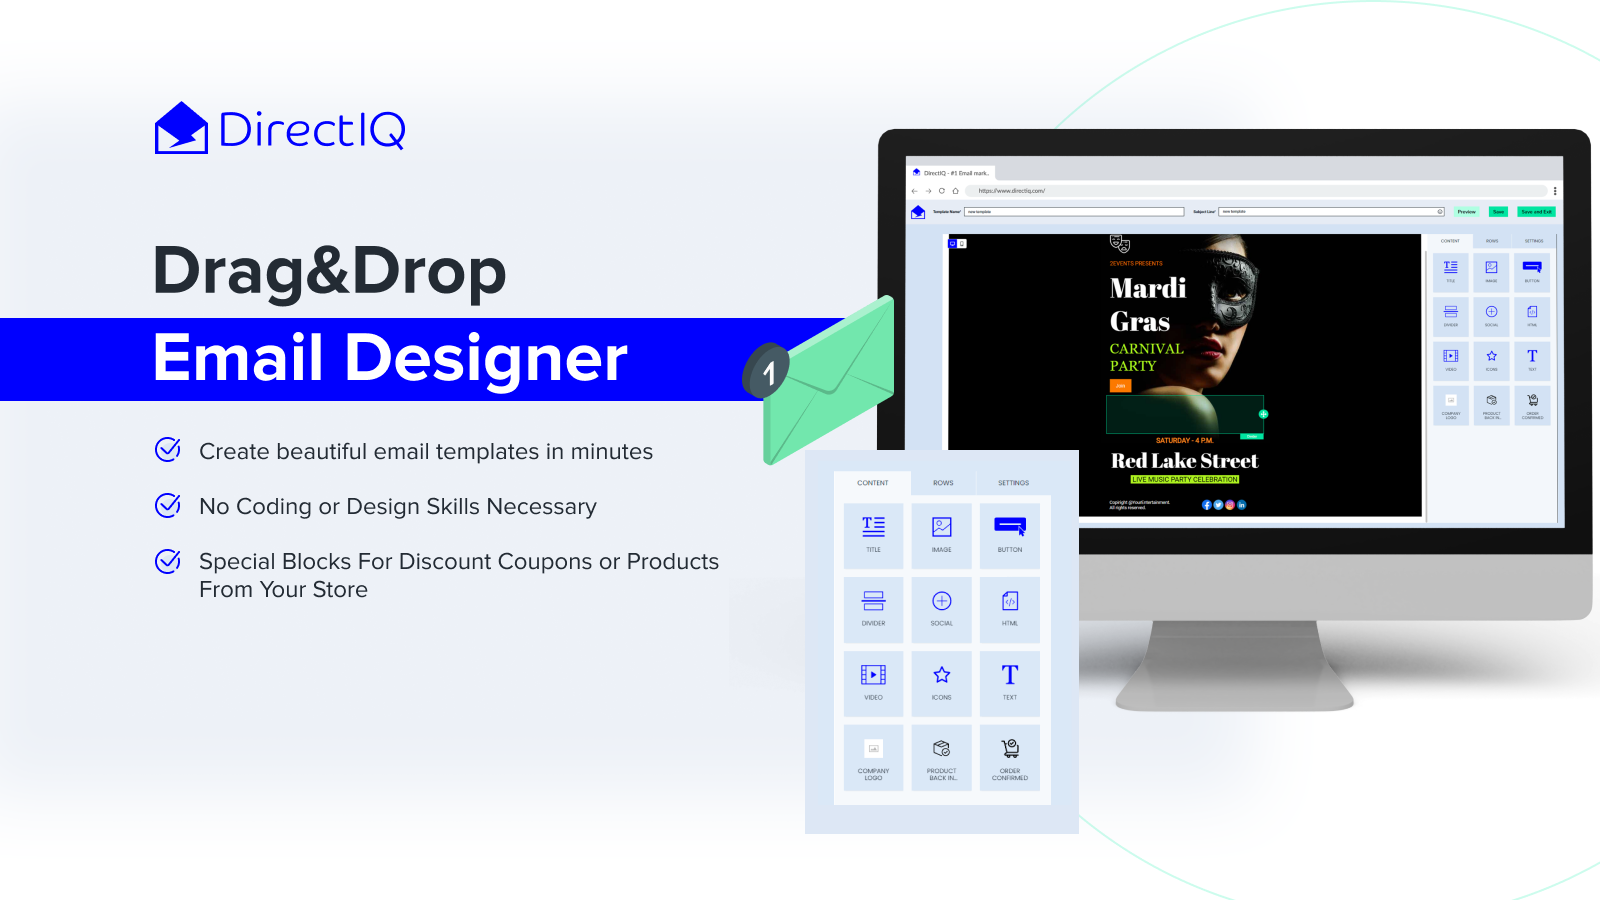 Drag & Drop Email Designer